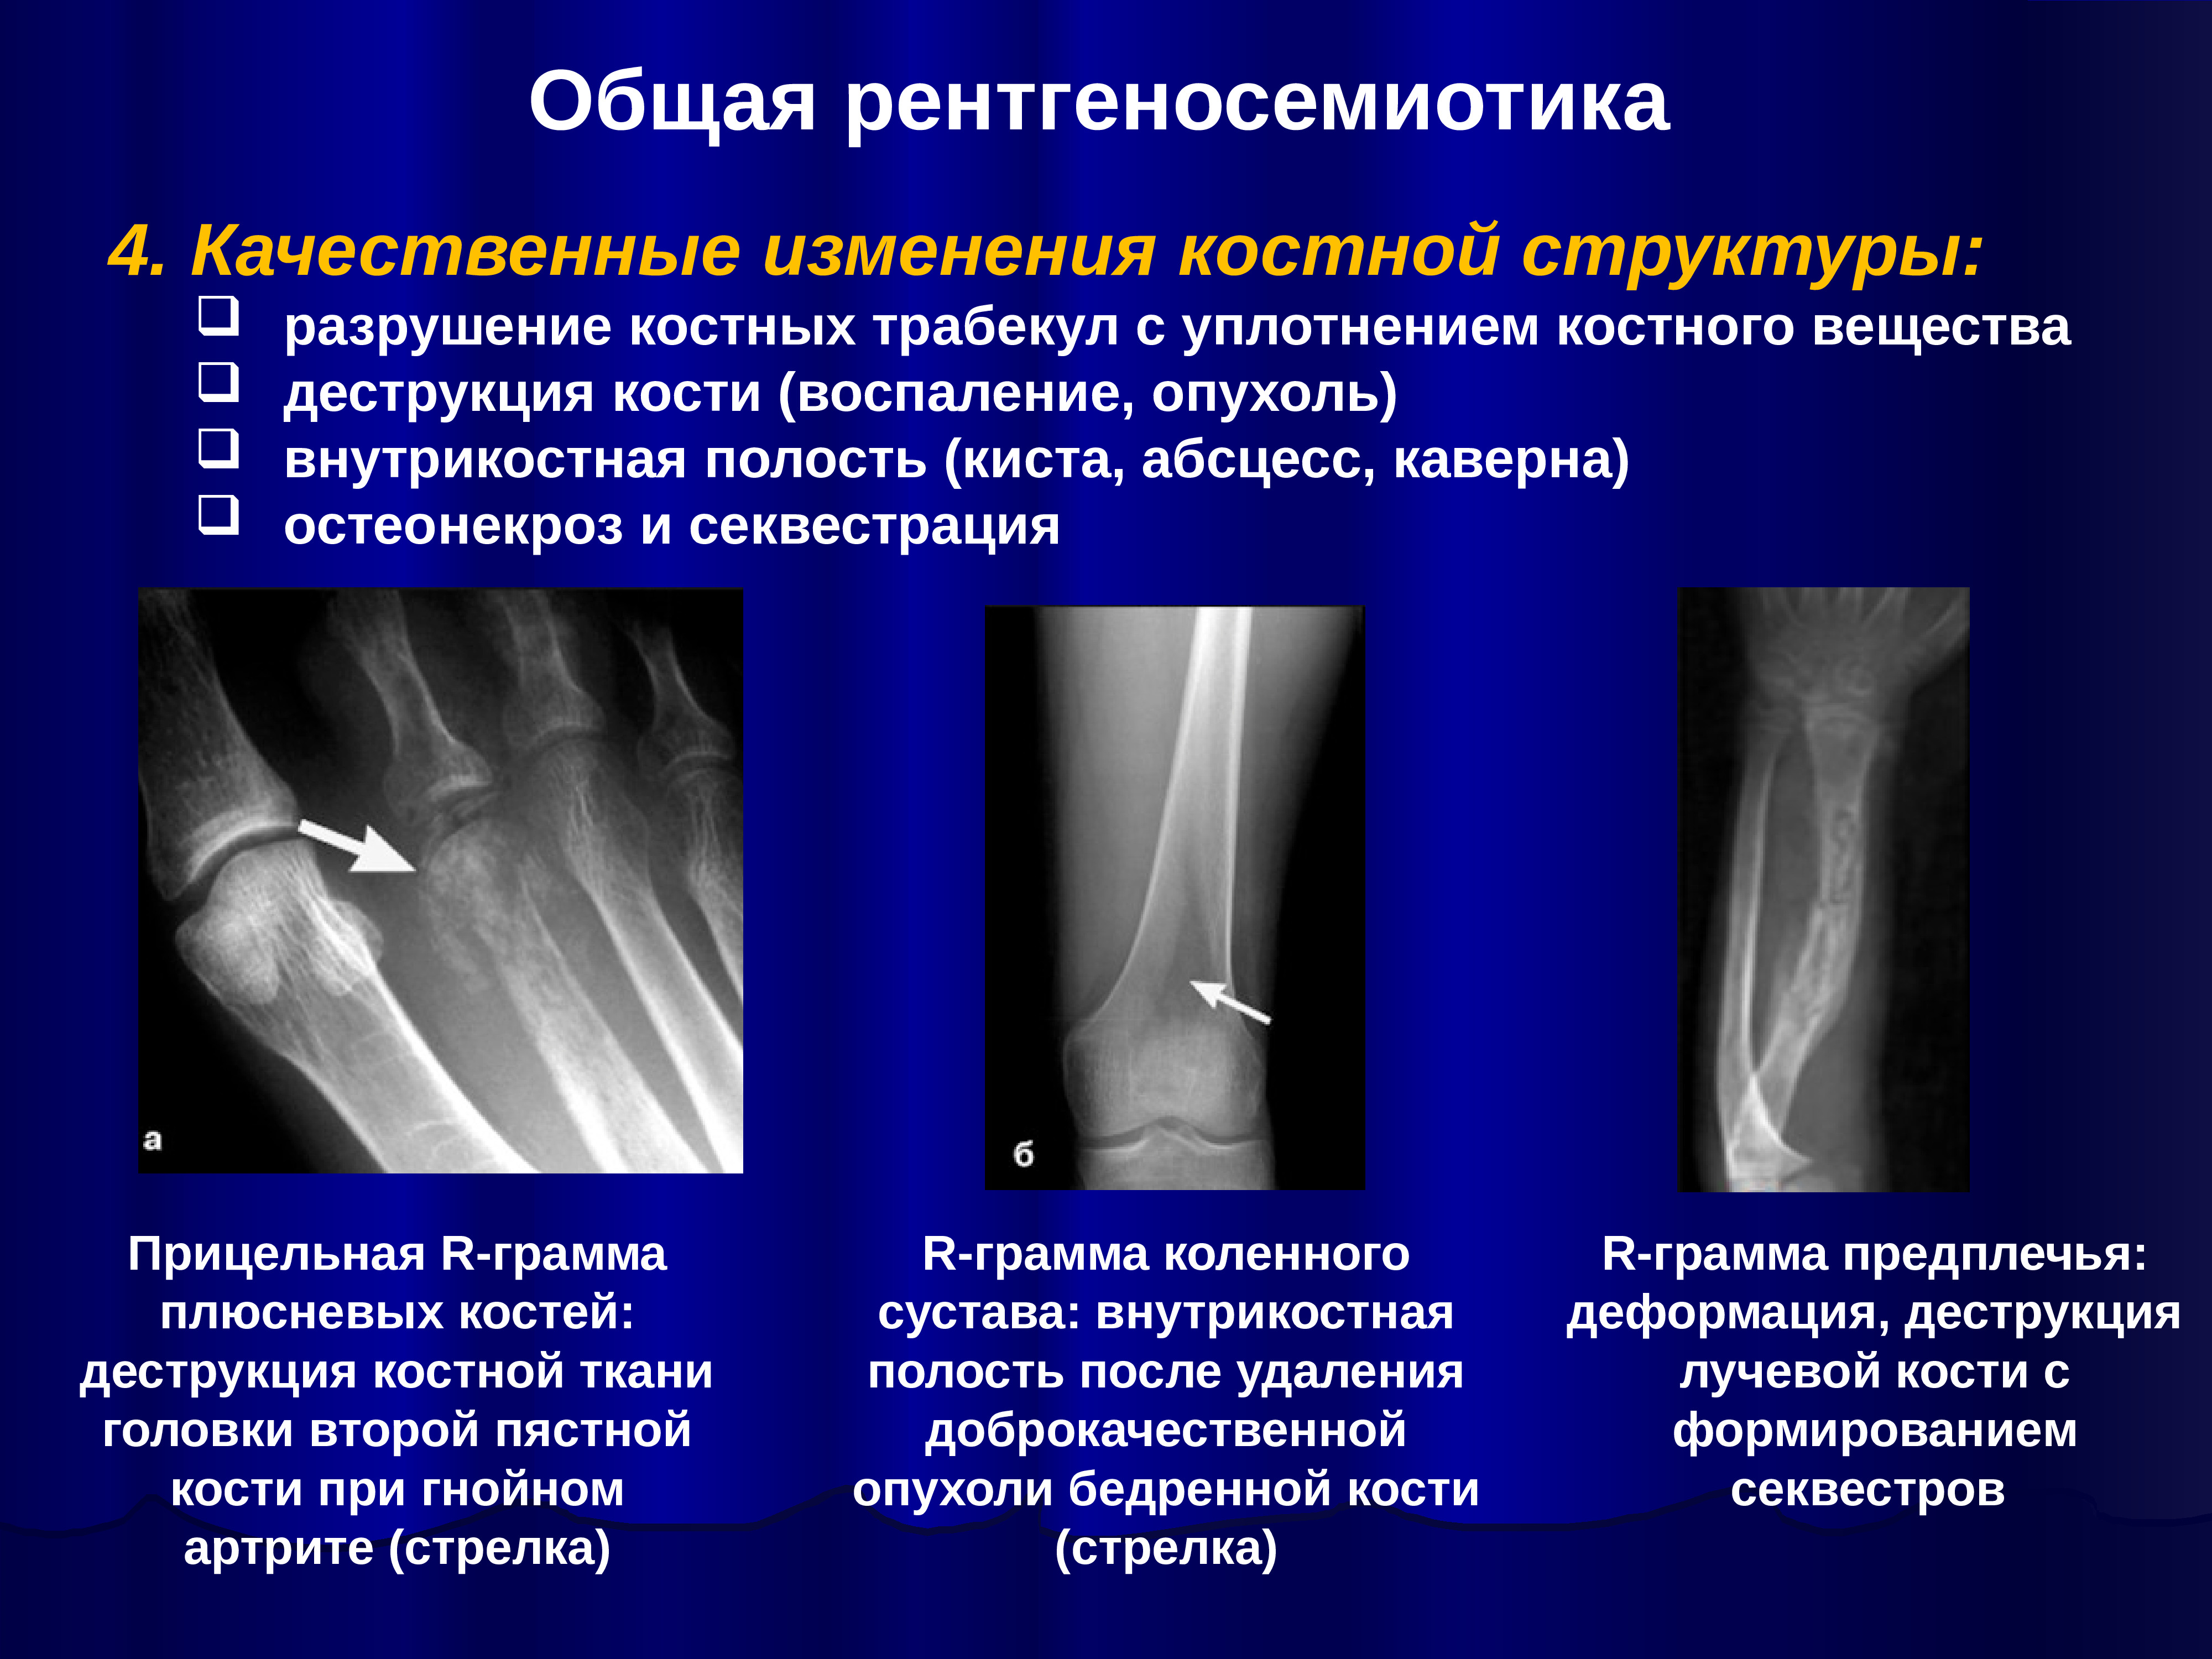 Структурные изменения костей. Рентгенологические синдромы костно-суставной патологии. Синдромы костно-суставной системы лучевая диагностика. Деструкция кости и остеопороз. Лучевые синдромы костей.